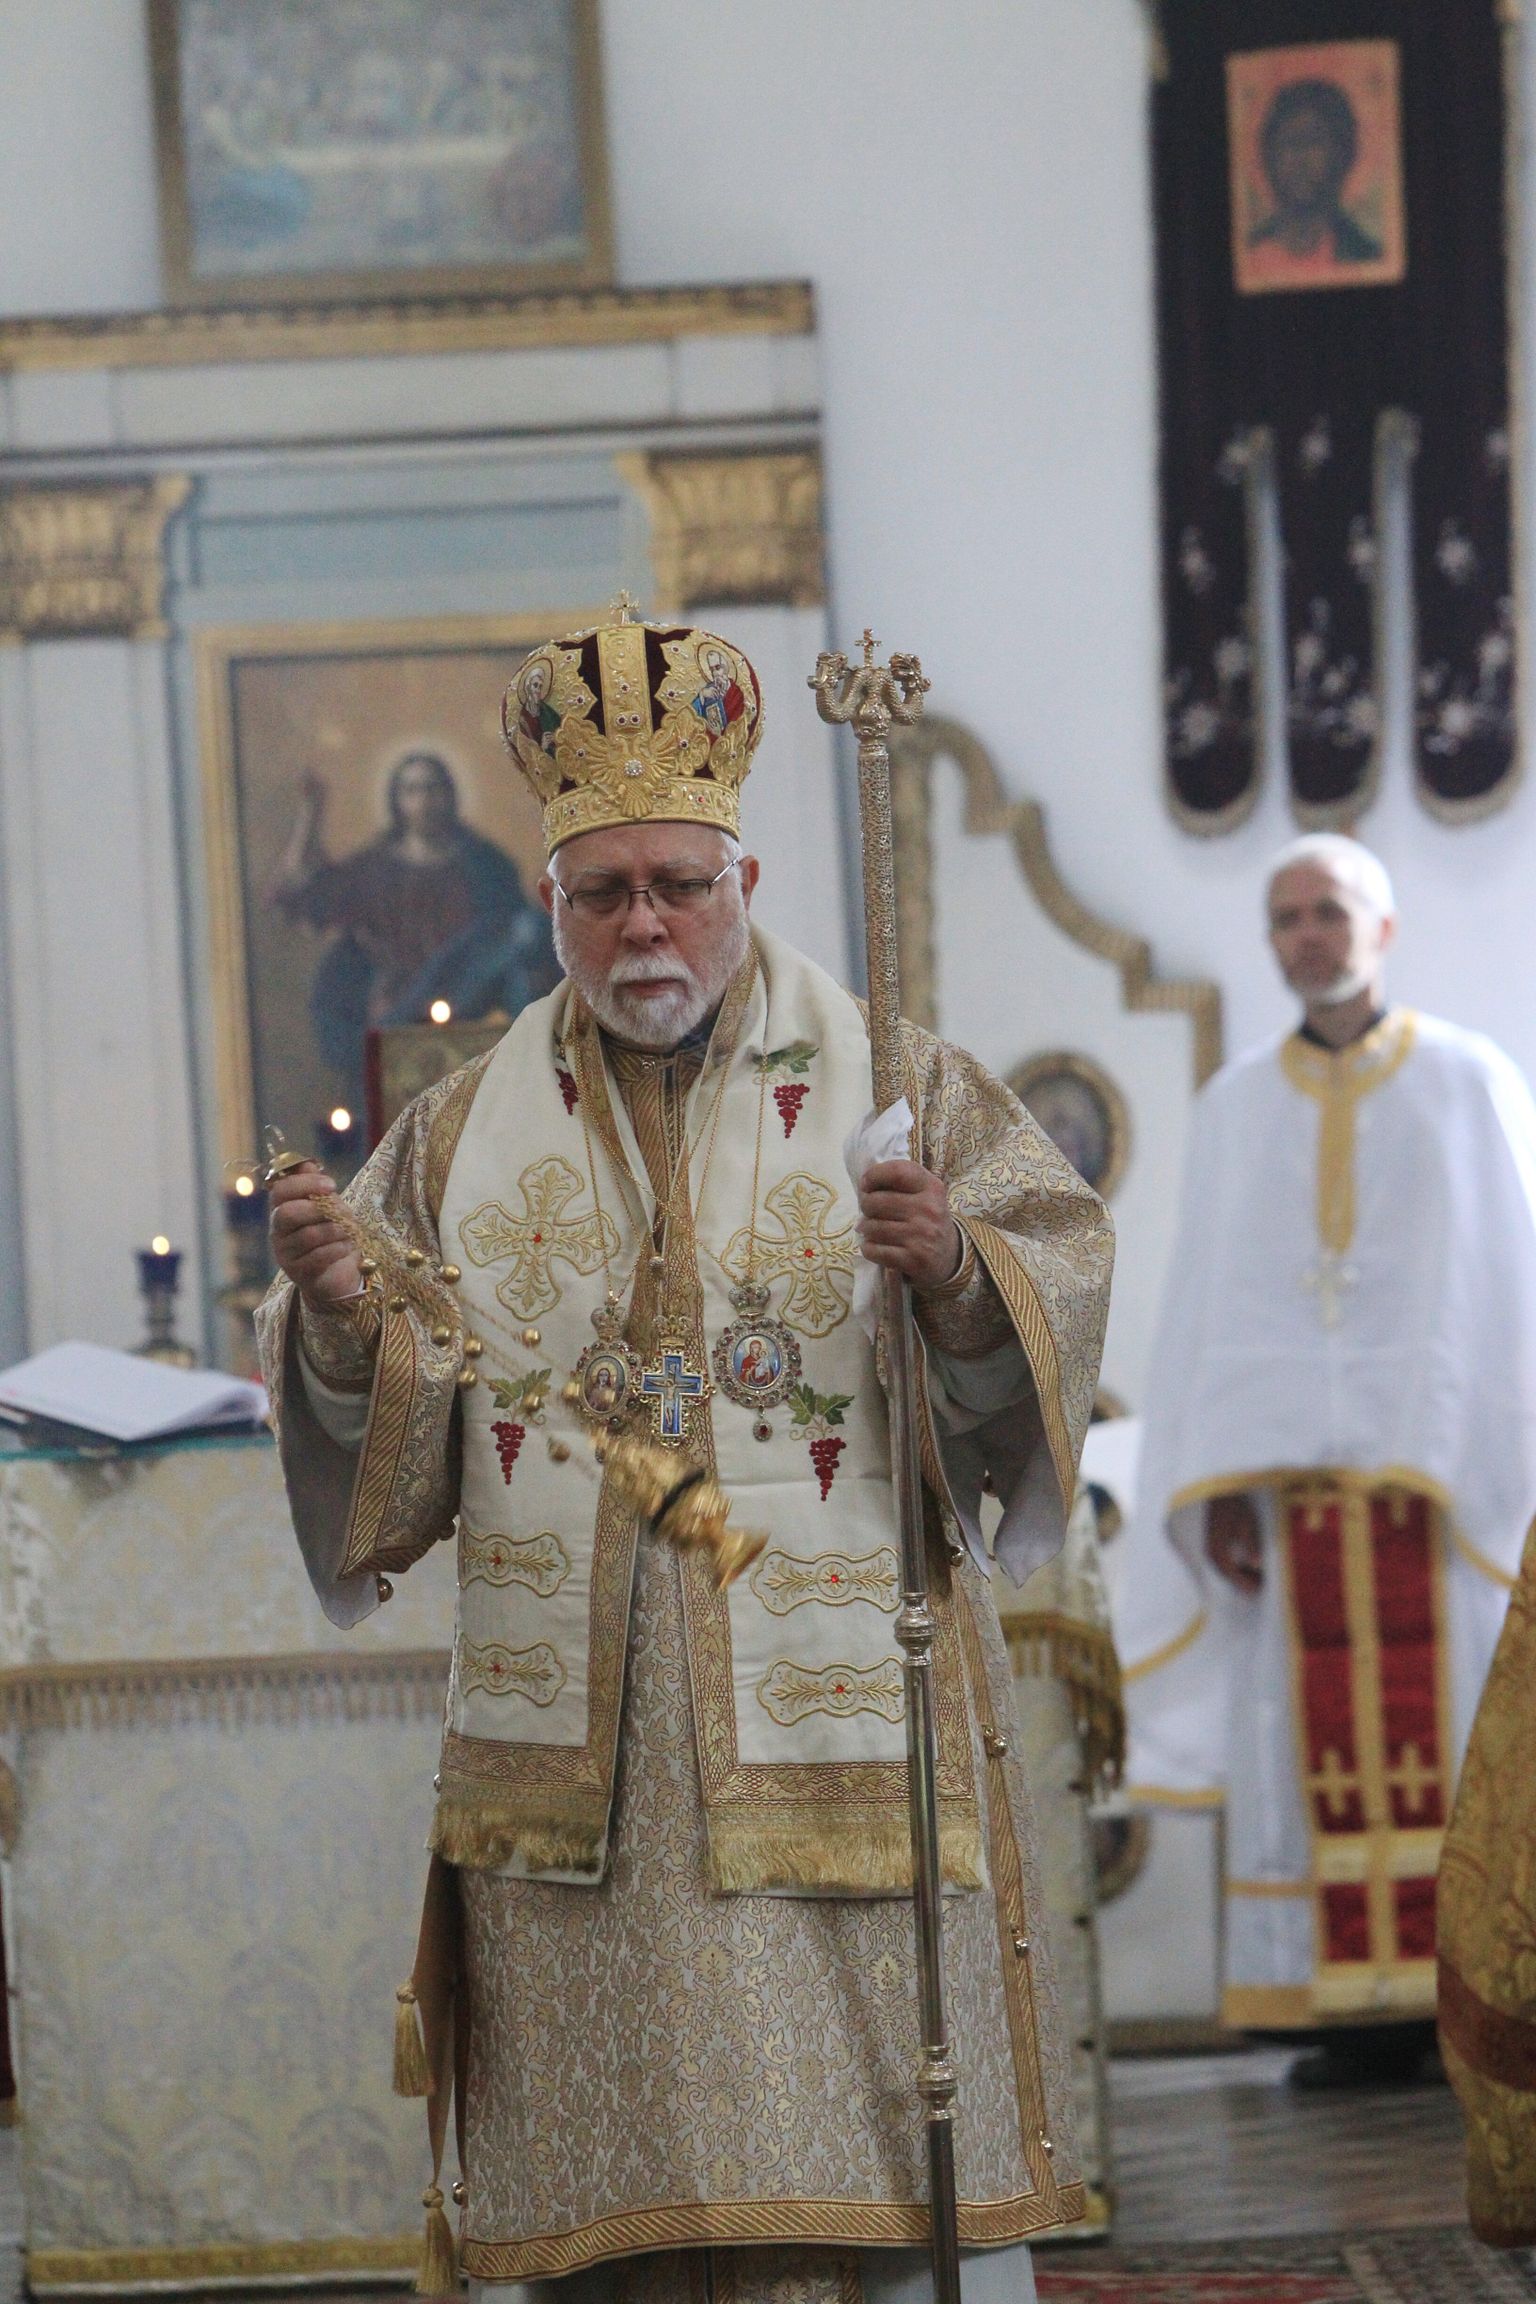 Metropoliit Stefanus Tartu Aleksandri kiriku nurgakivi sajanda aastapäeva üritusel.